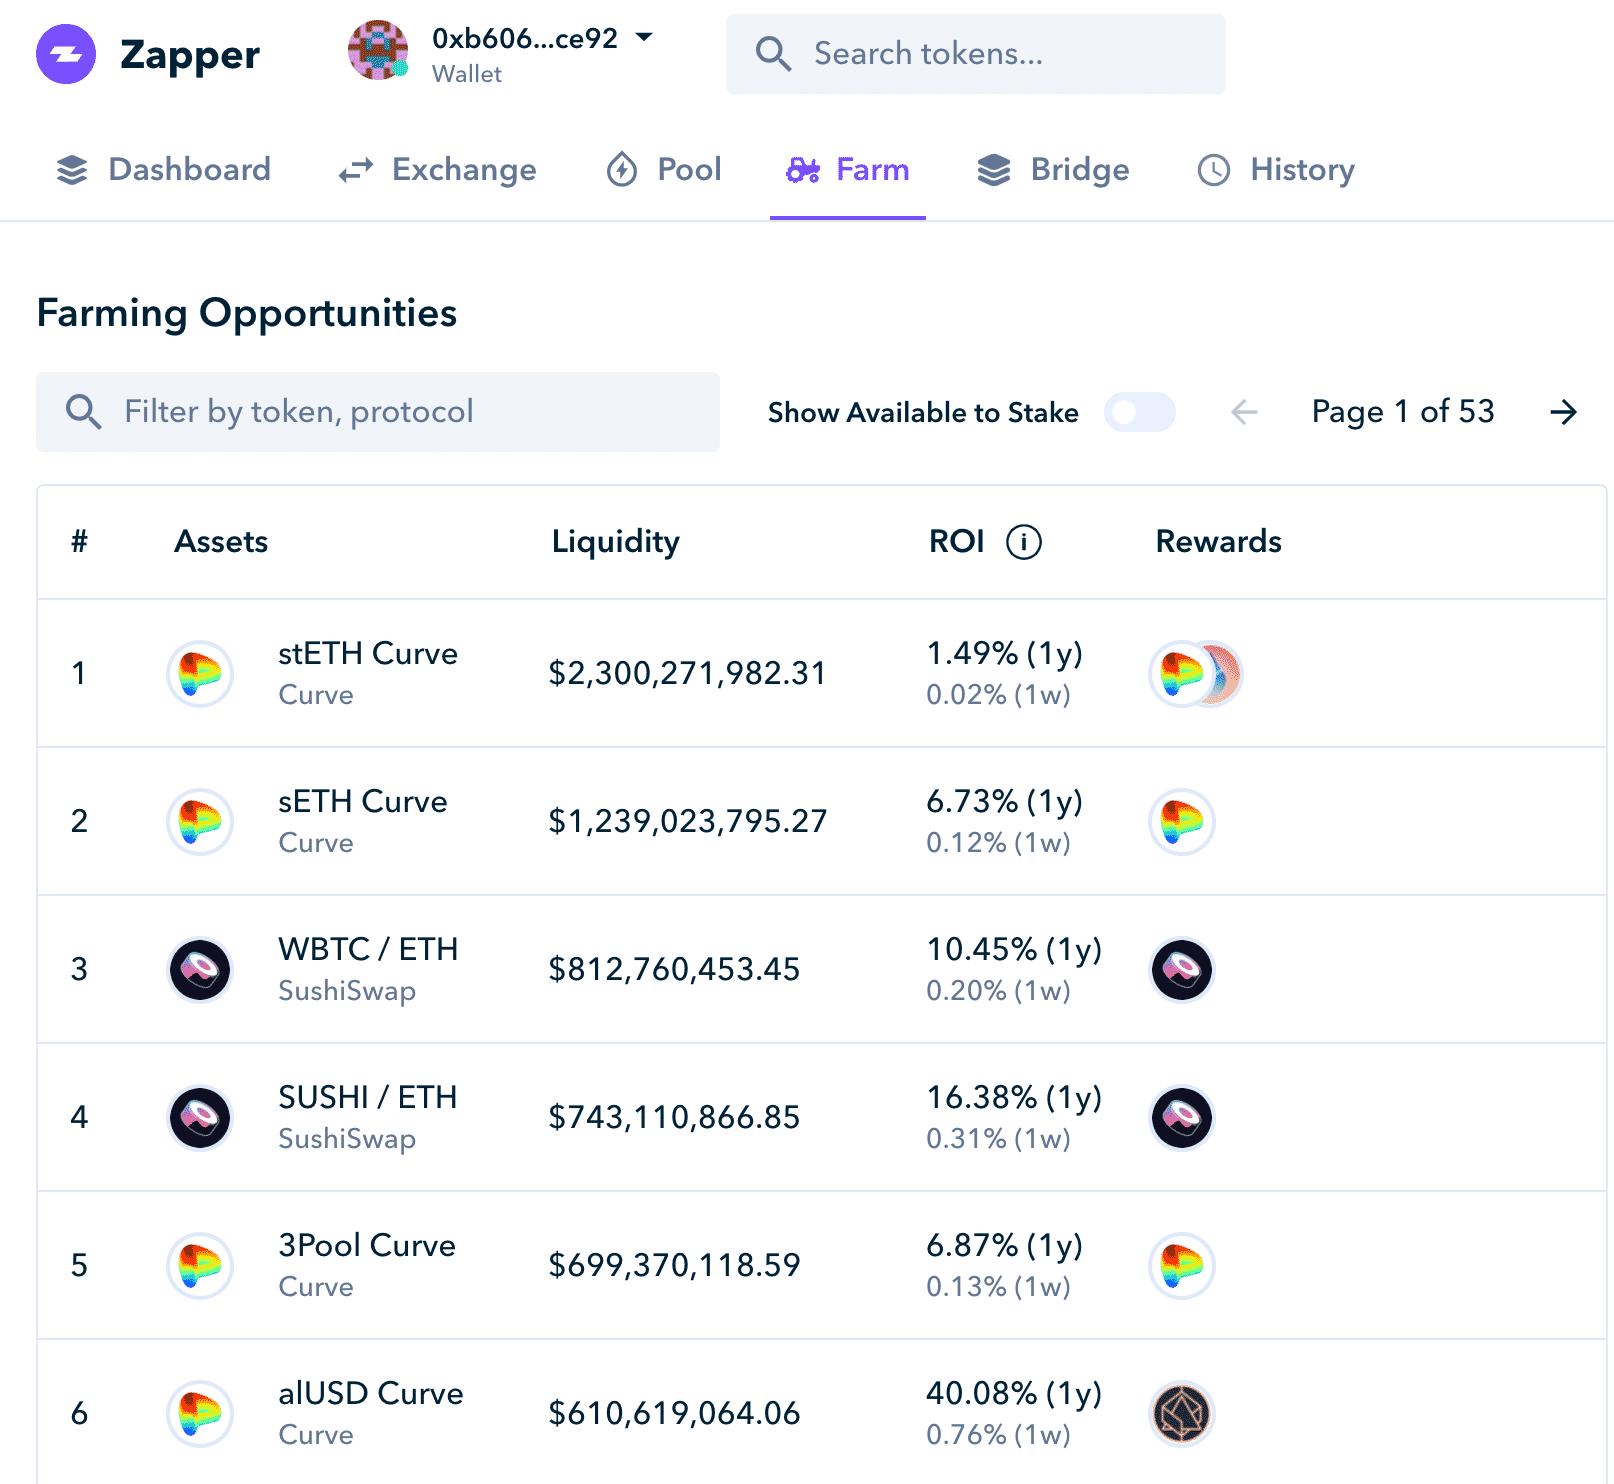 Zapper's UI